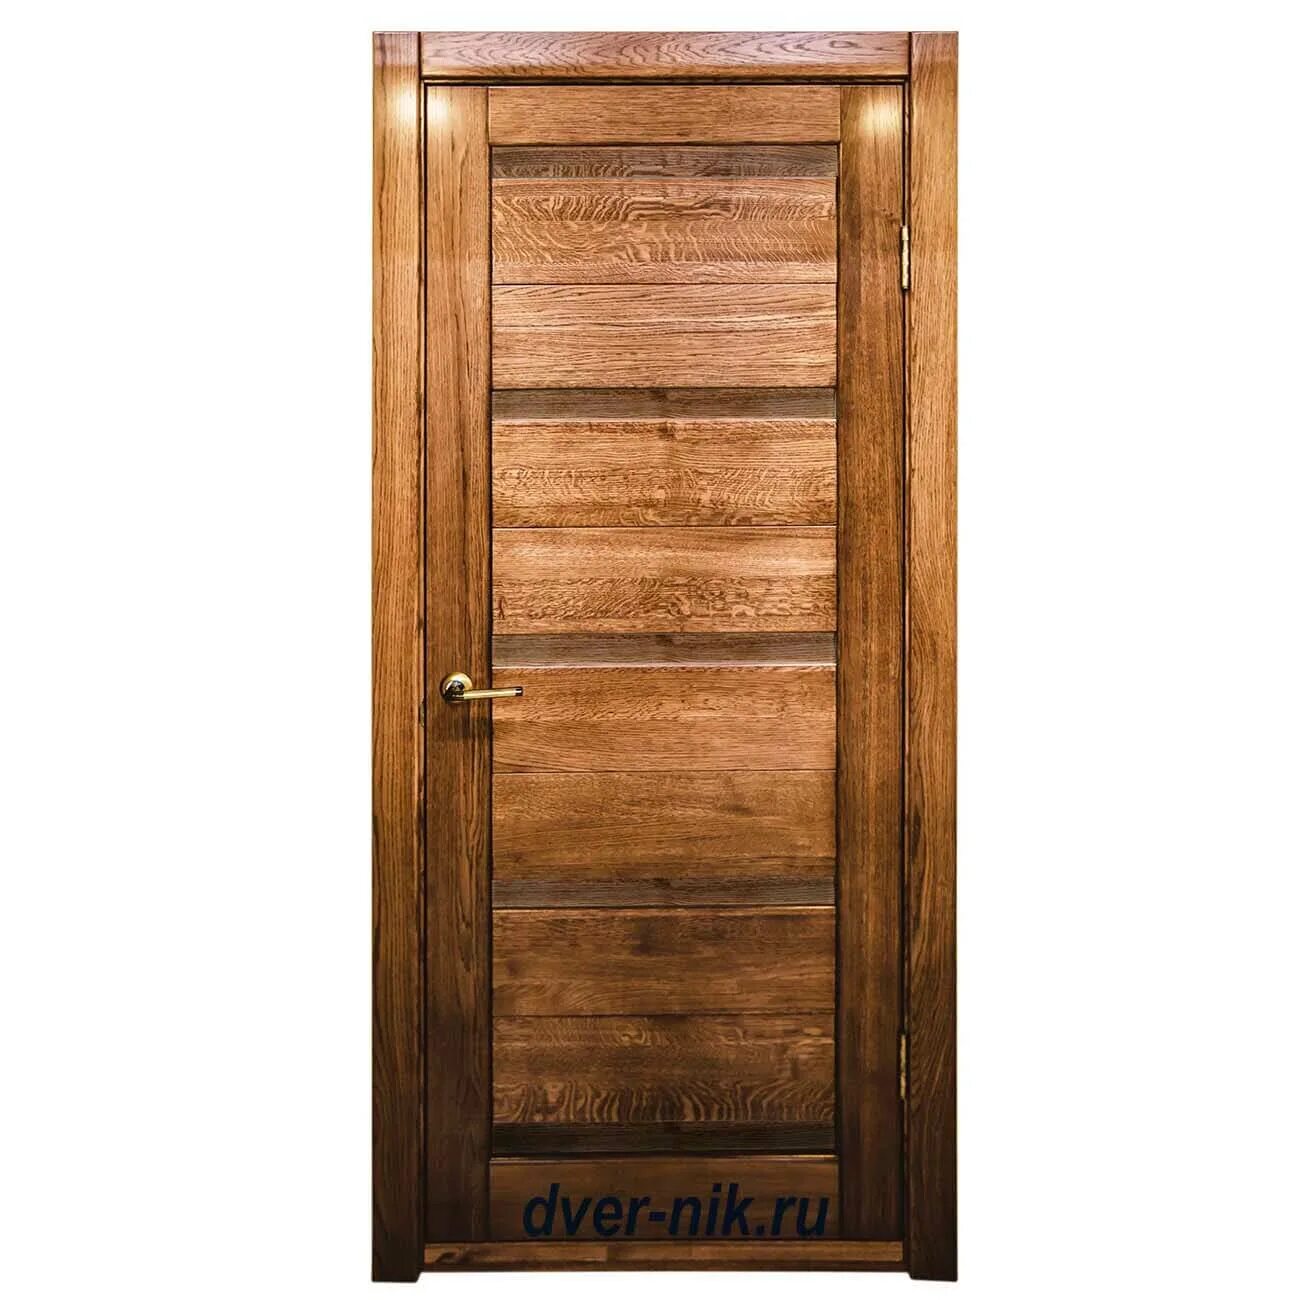 FF OKSAMANTY 3p дверь. Межкомнатные двери дуб антик. Двери из массива 600х1900. Двери межкомнатные цвет дуб антик. Где купить деревянные двери